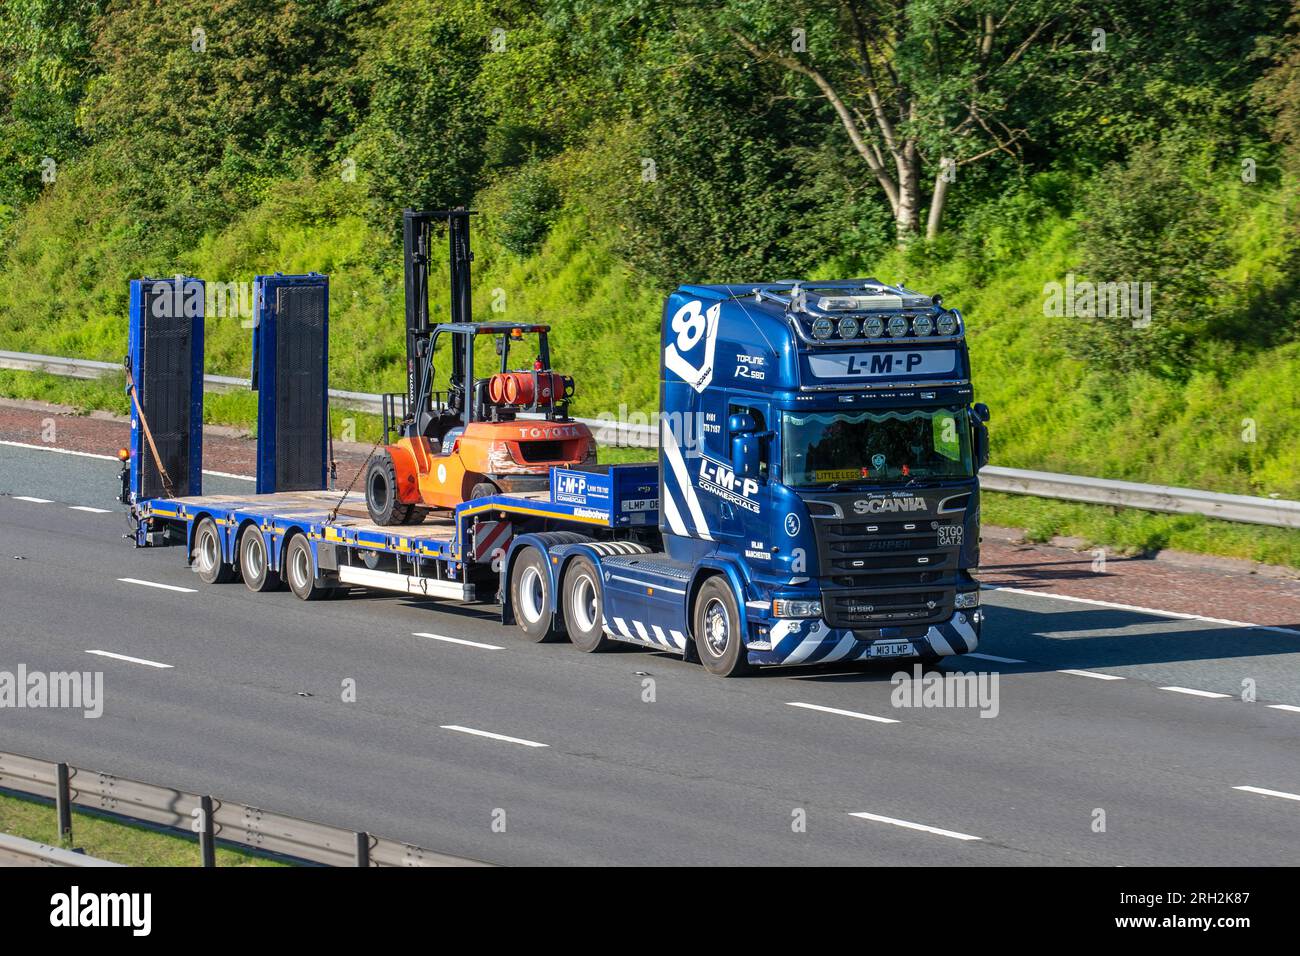 "Gambe piccole" nome conducente per il veicolo LMP Scania Super R580 e il rimorchio con telaio a gradini Kassbohrer che viaggia sull'autostrada M6 a Greater Manchester, Regno Unito Foto Stock